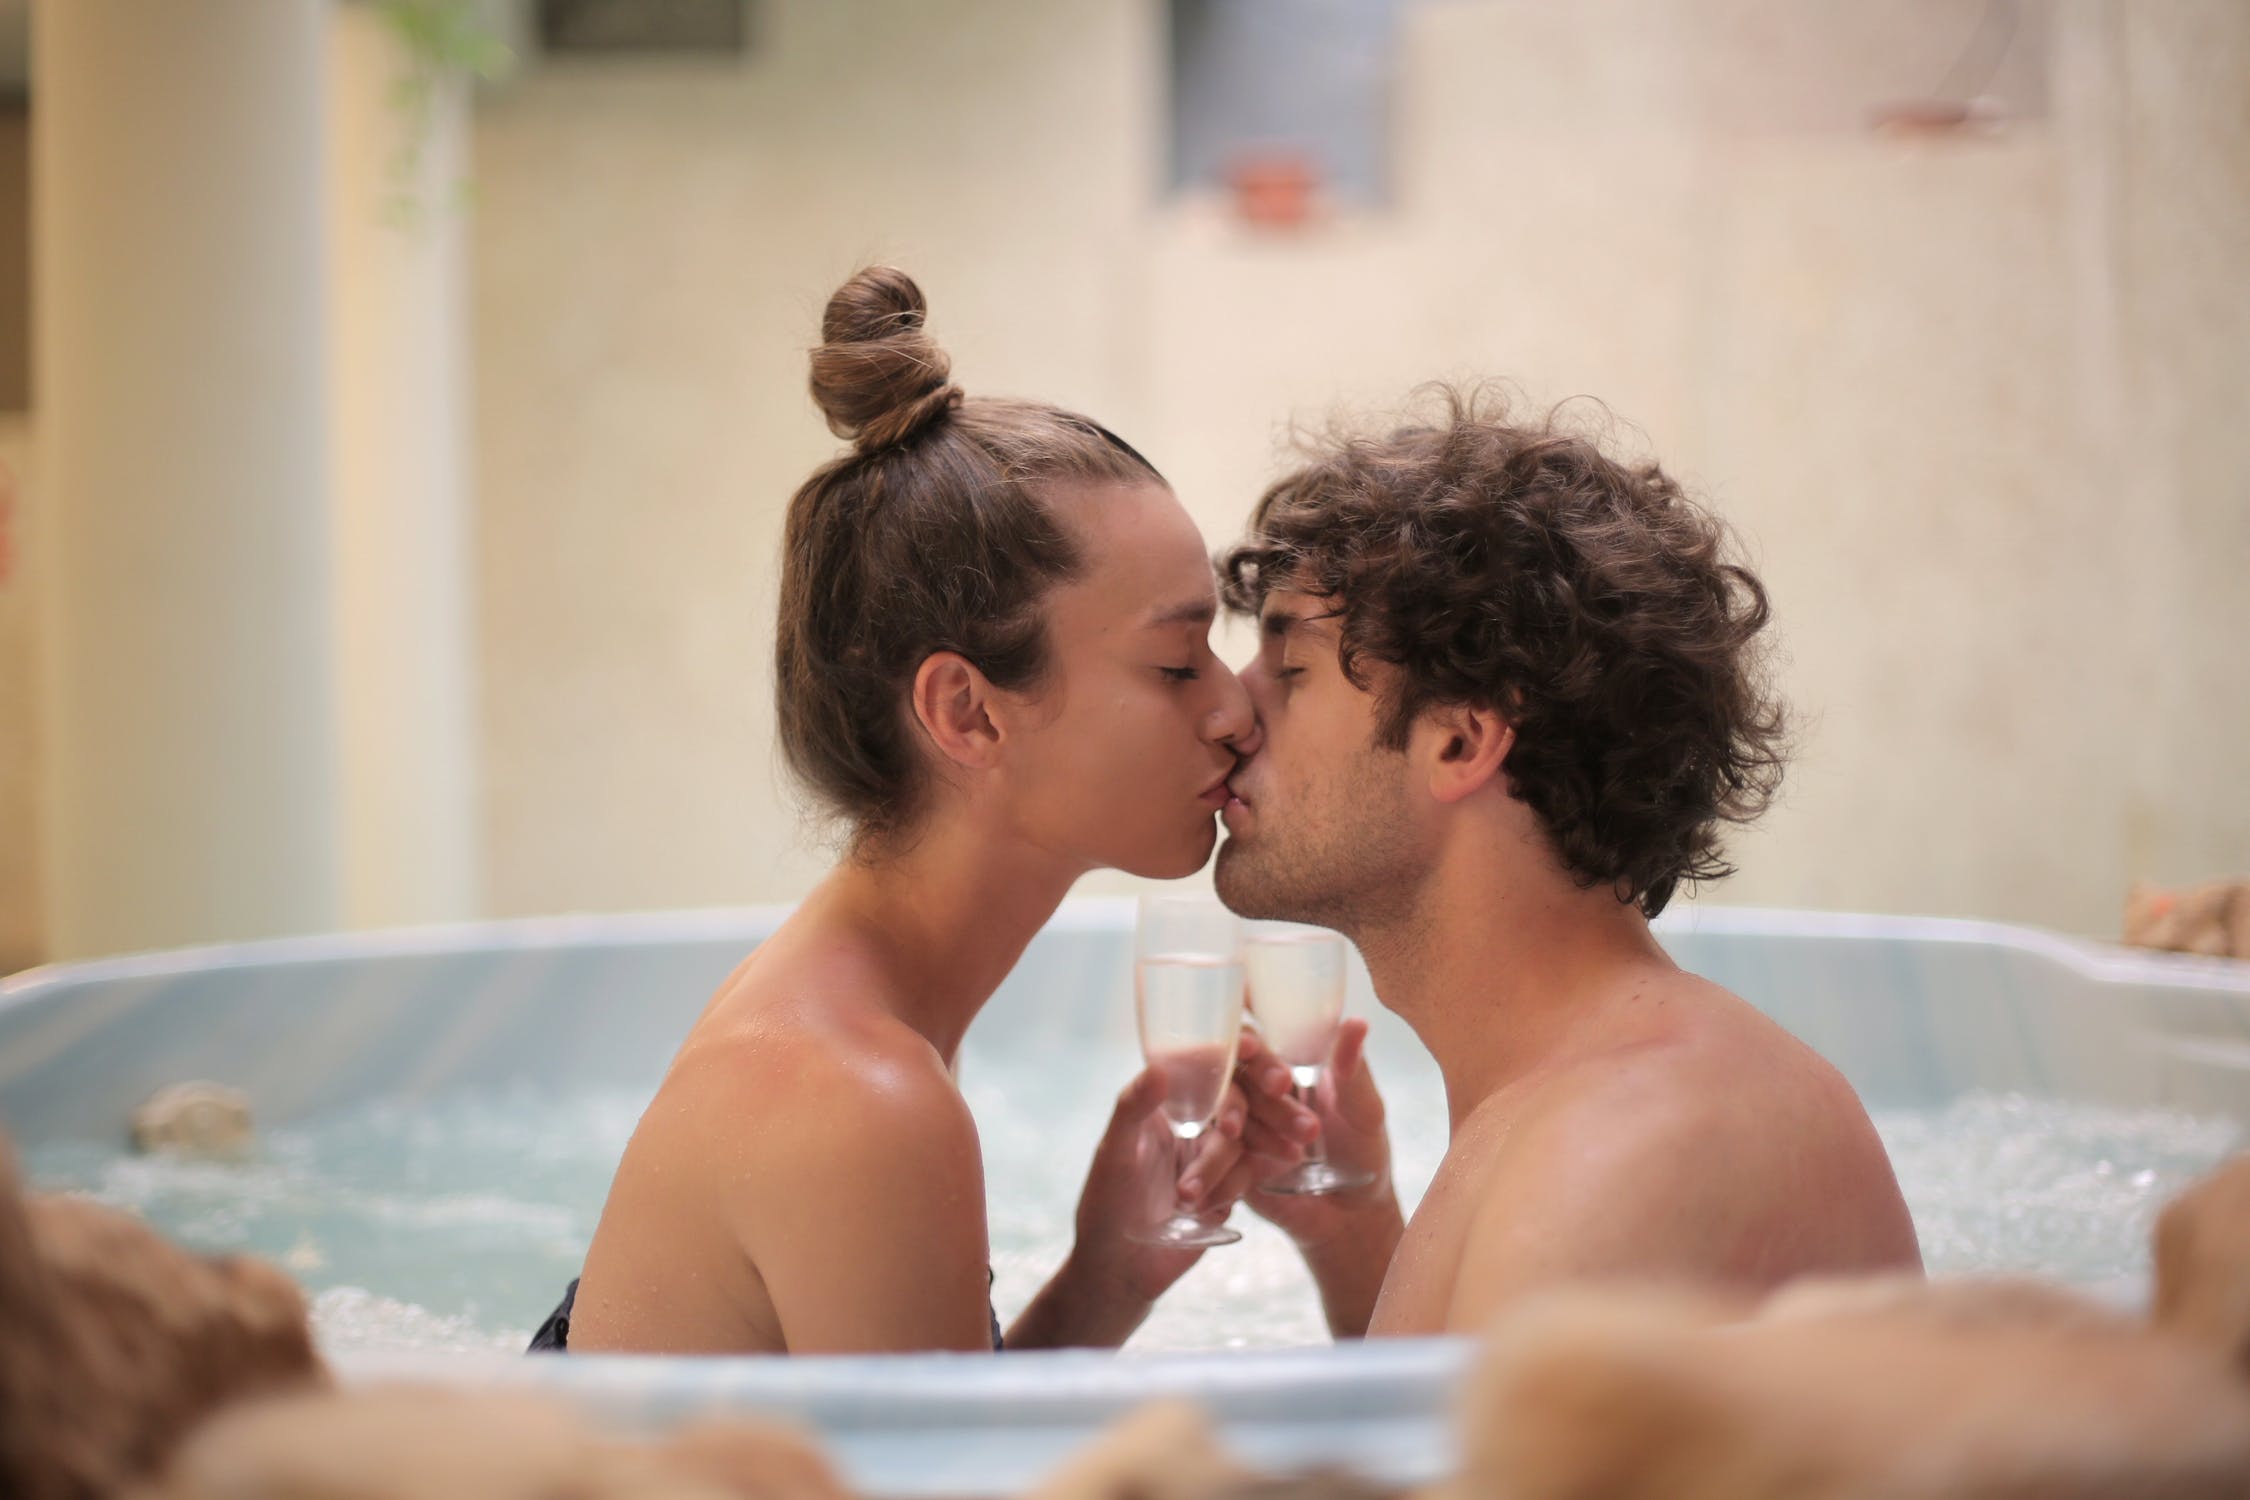 Σεξ και εποχές: Πότε οι άντρες θέλουν περισσότερες ερωτικές επαφές